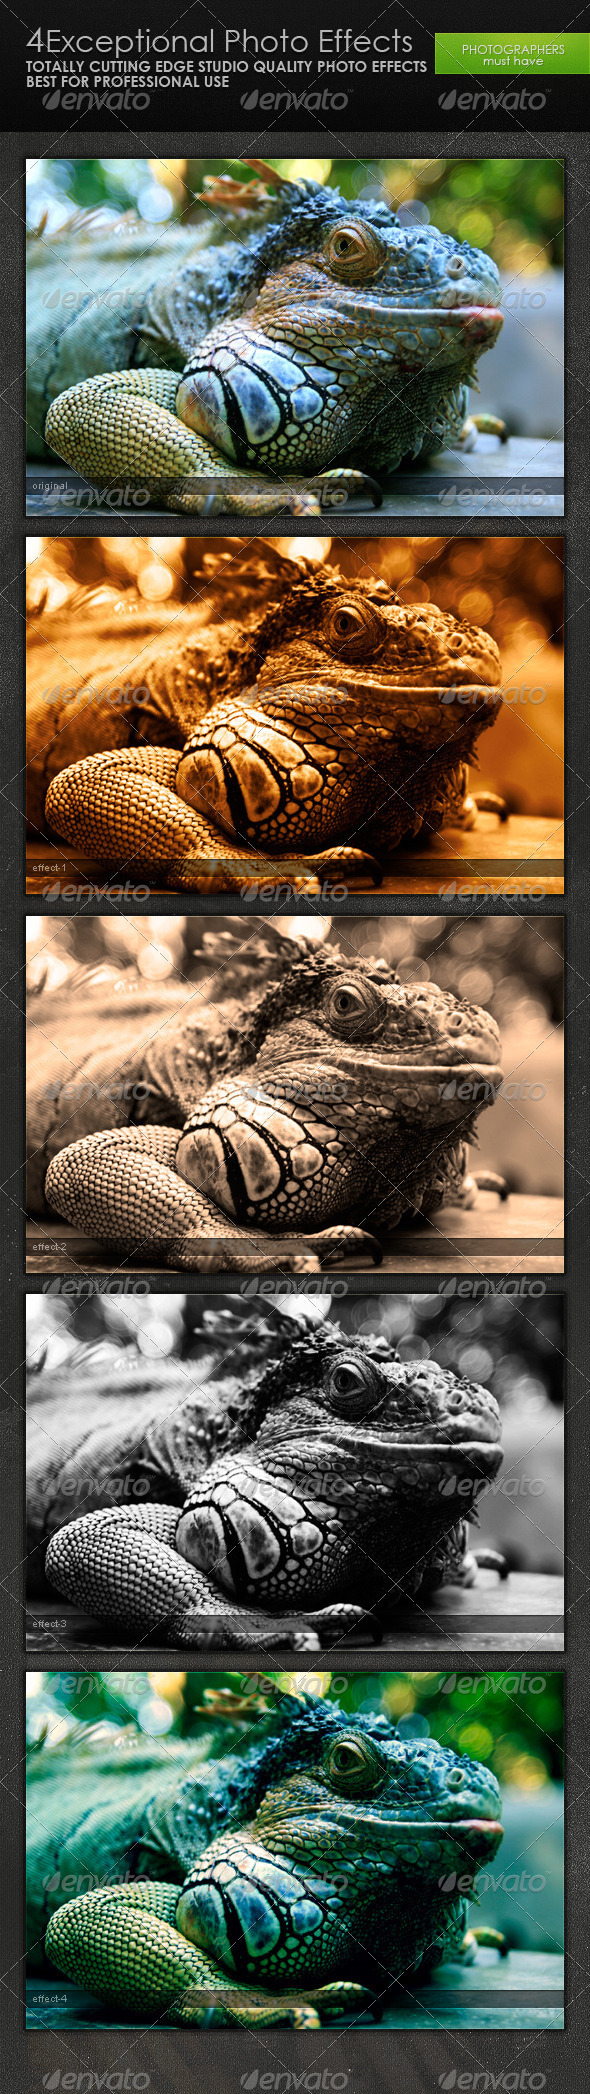 Descarga excepcional efectos fotográficos en GraphicRiver - Envato